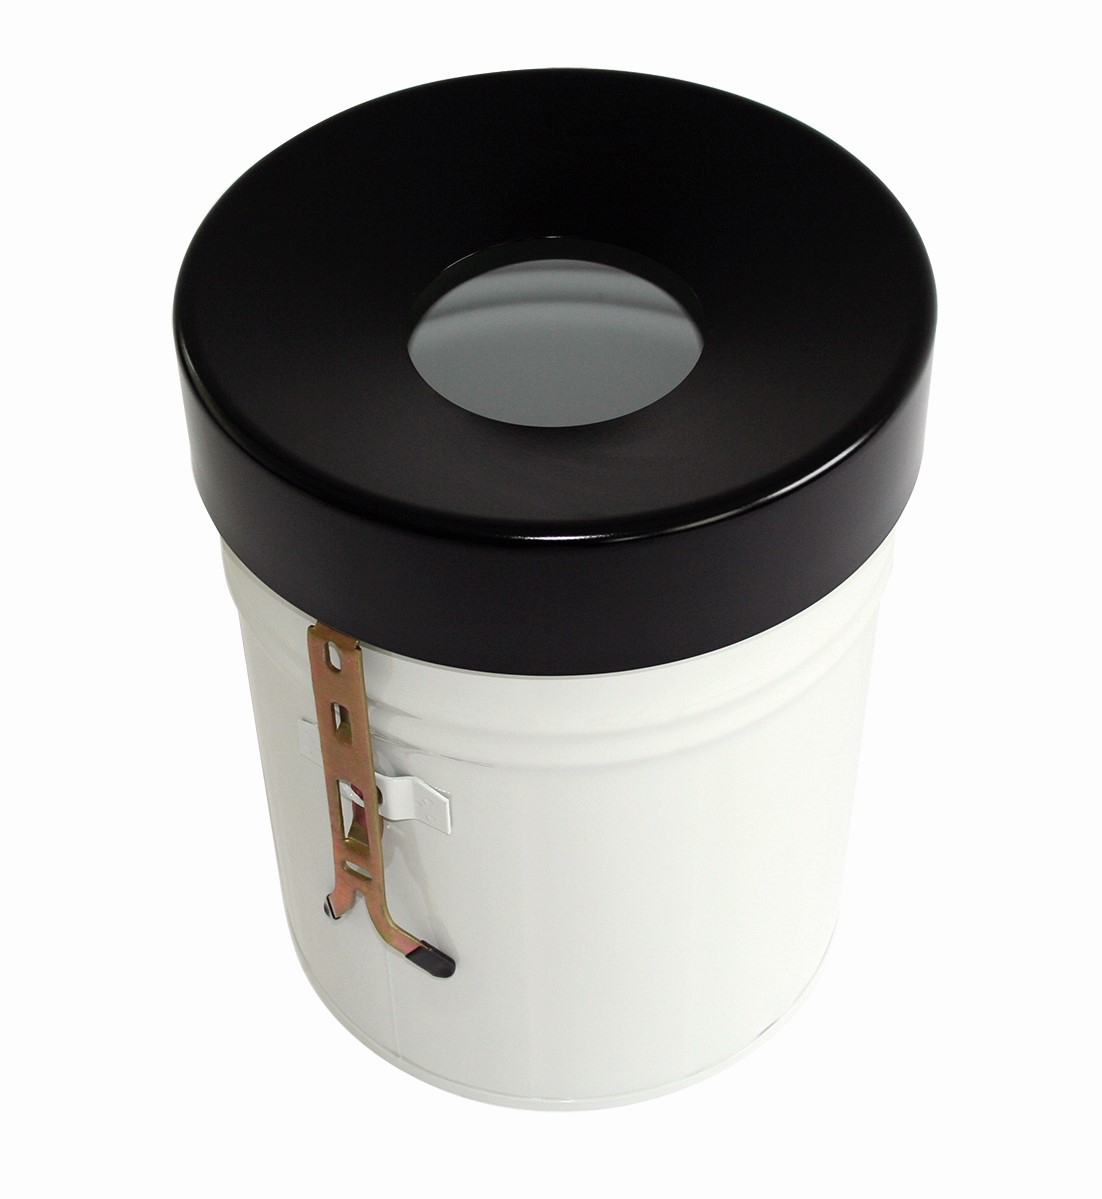 Selbstlöschender Abfallbehälter FIRE EX zur Wandbefestigung, 16 l, weiß, Kopfteil schwarz Standard 1 ZOOM